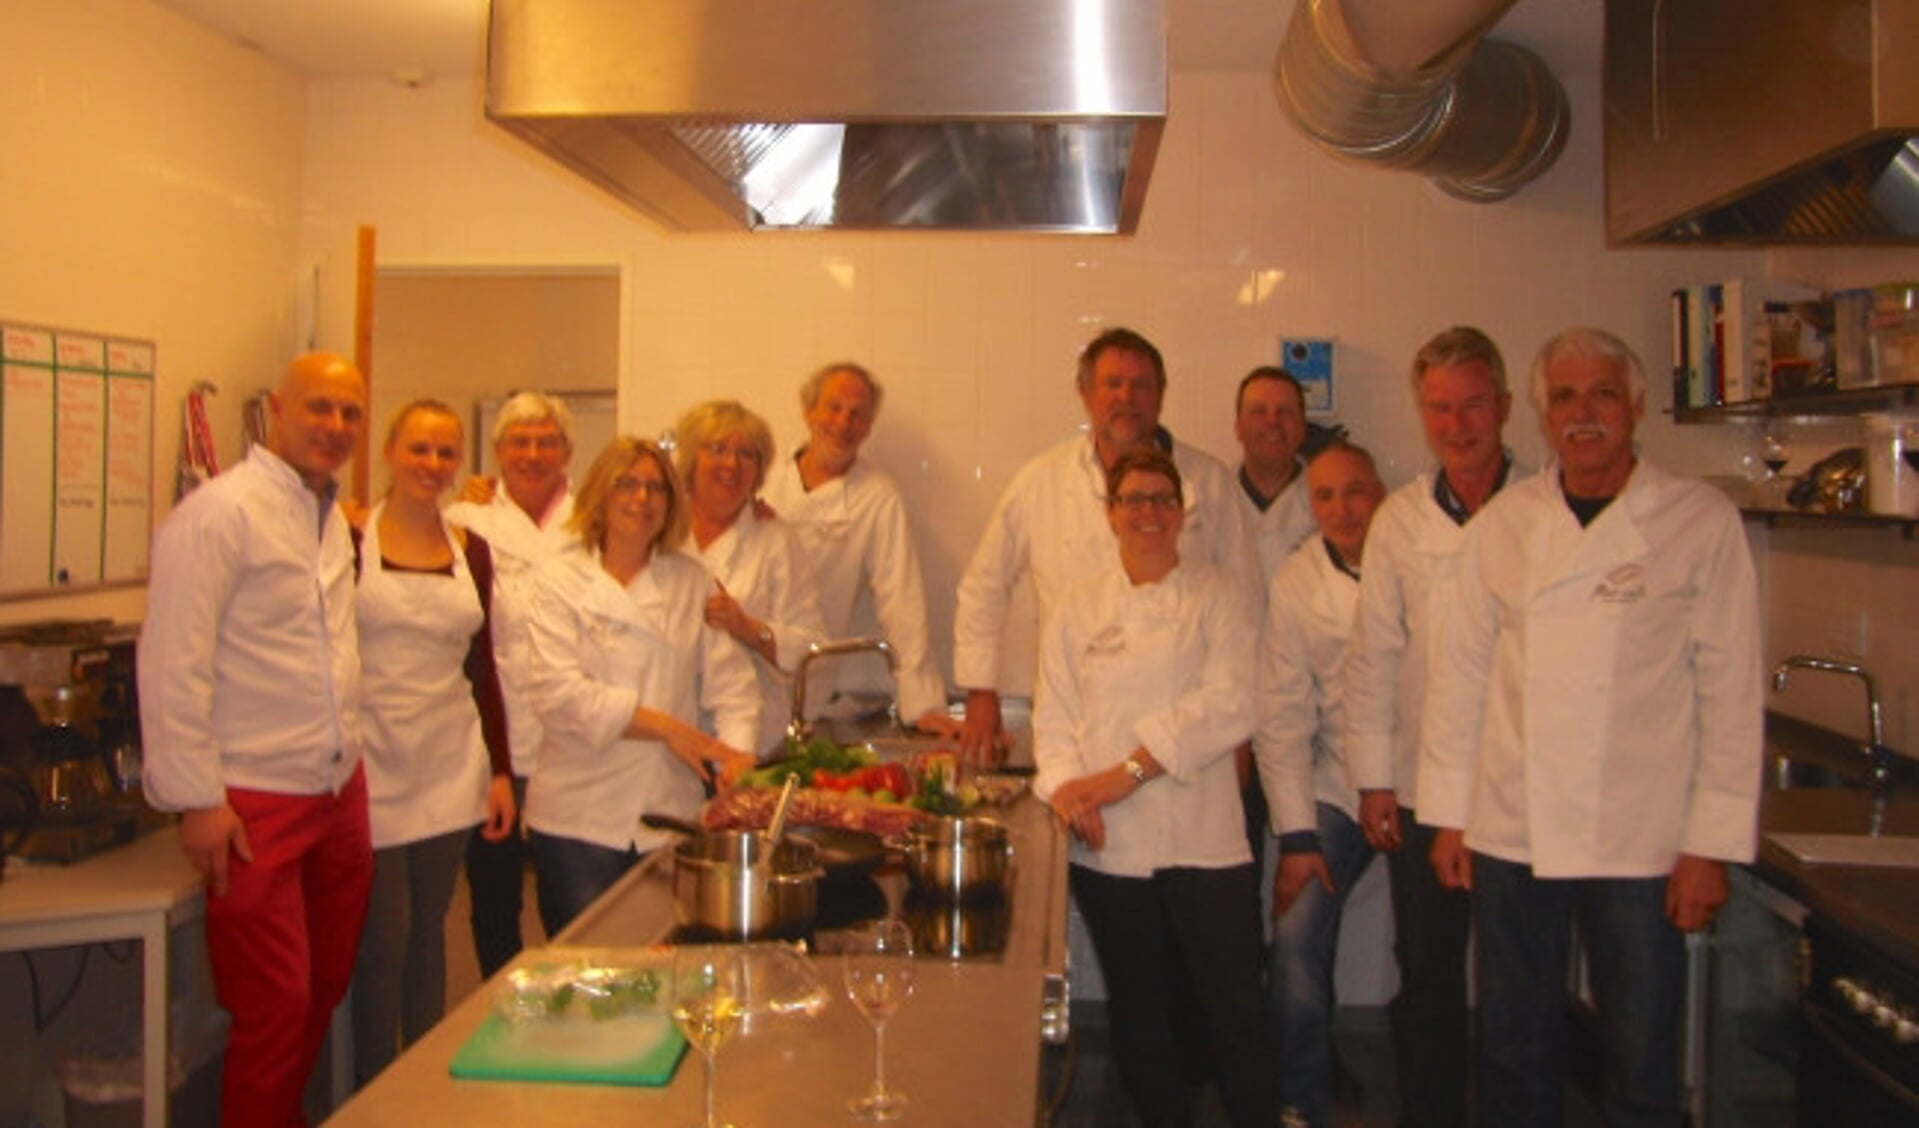  De kookgroep van Flevo Culi in de Dorpsboerderij in Dronten.